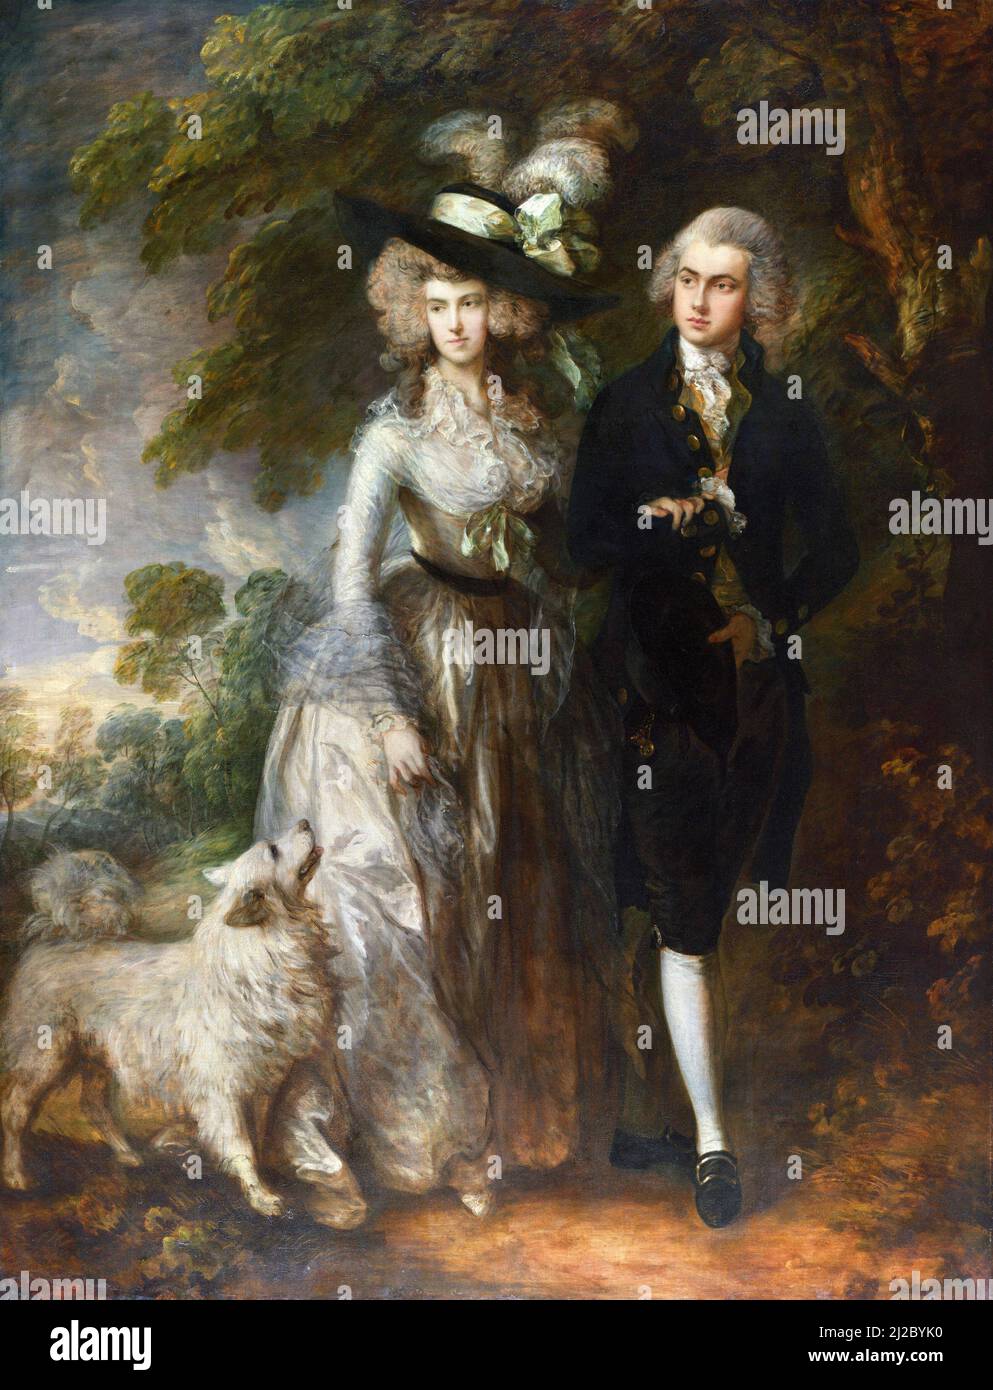 Mr und Mrs William Hallett ('The Morning Walk') von Thomas Gainsborough (1727-1788), Öl auf Leinwand, 1785 Stockfoto